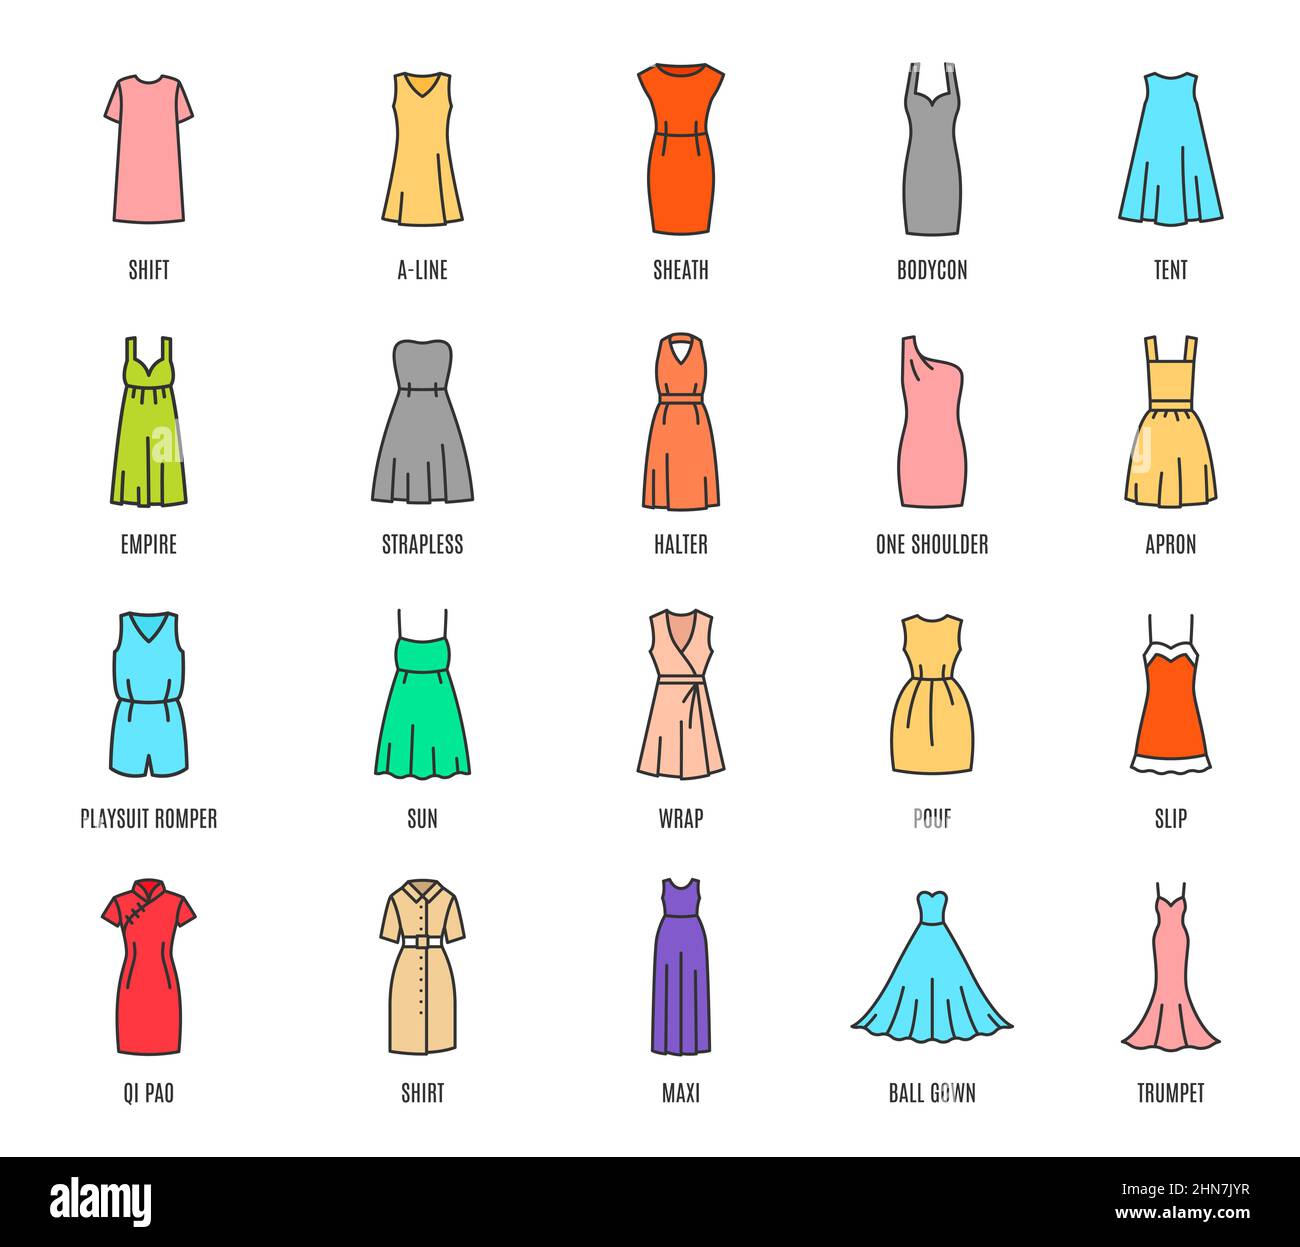 Color mujer vestidos iconos aislados, moda femenina tipos de ropa